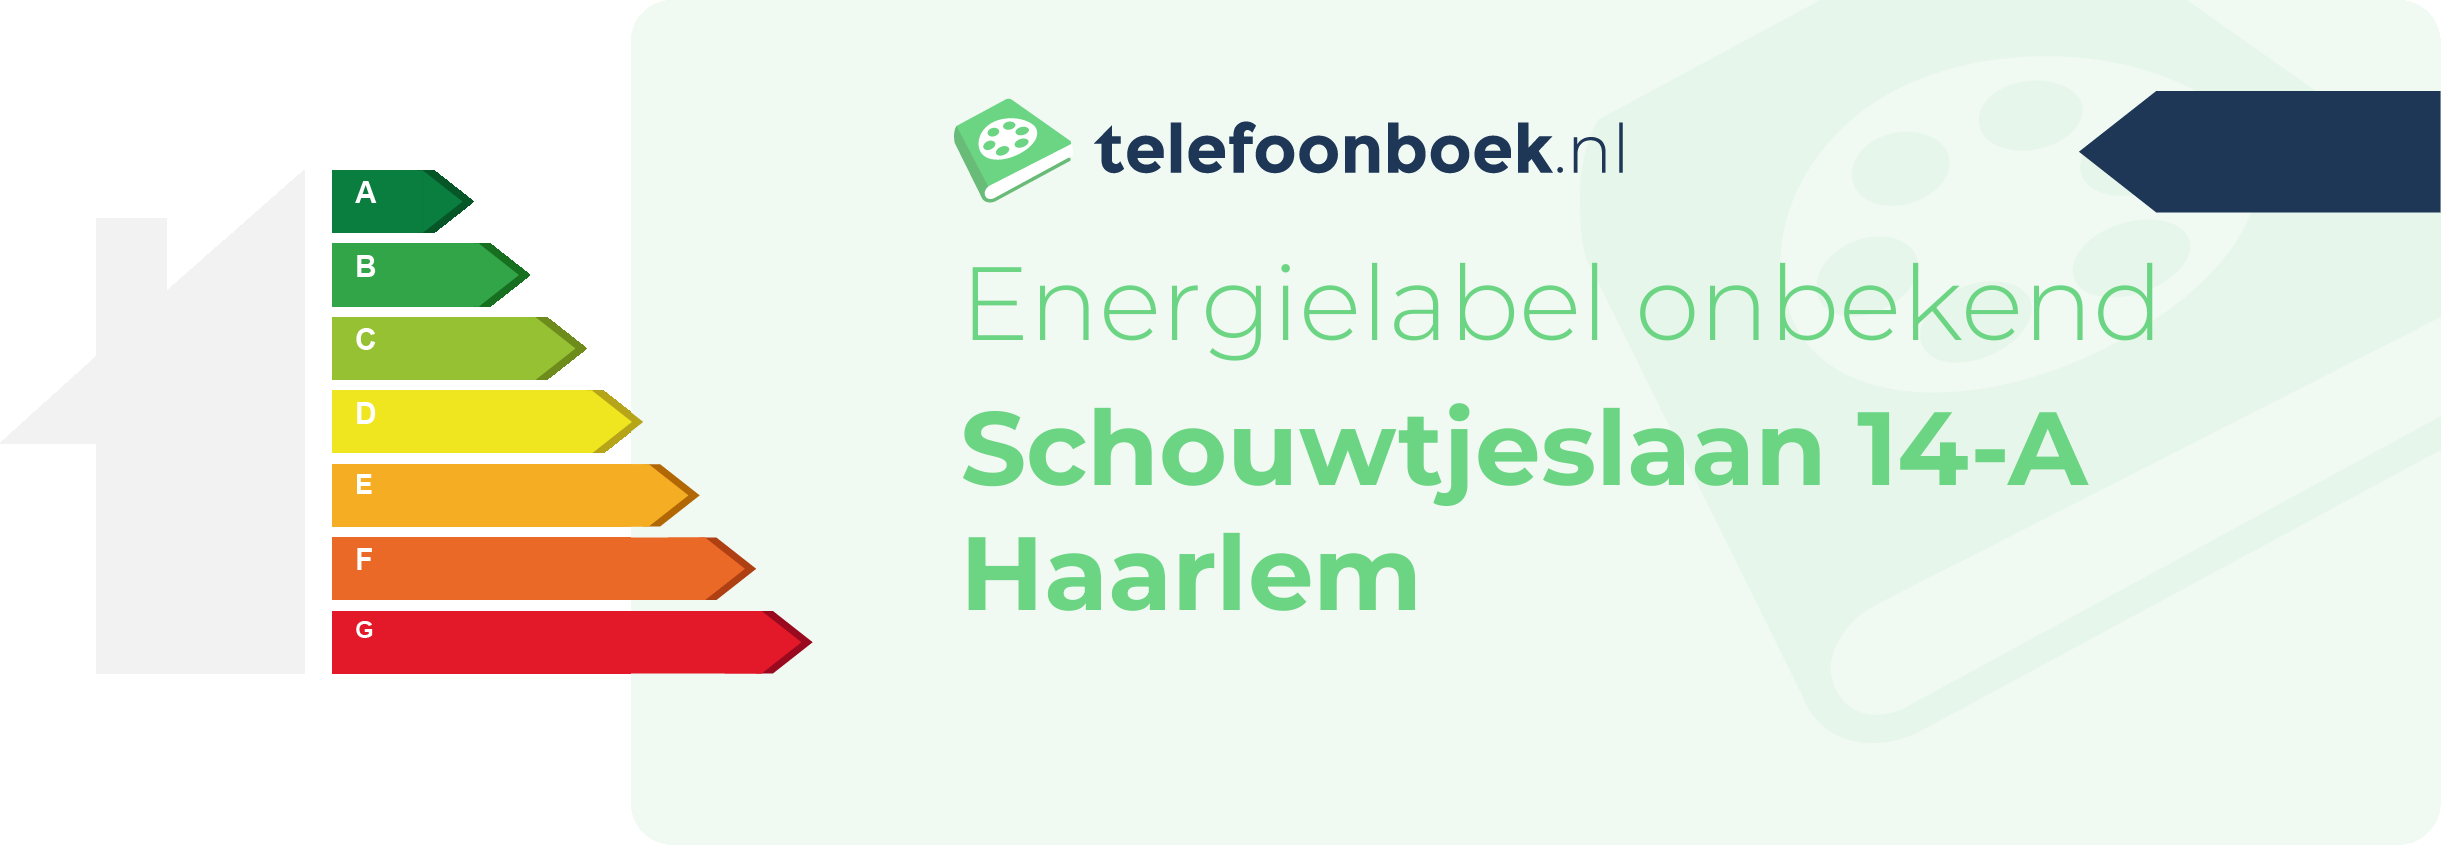 Energielabel Schouwtjeslaan 14-A Haarlem